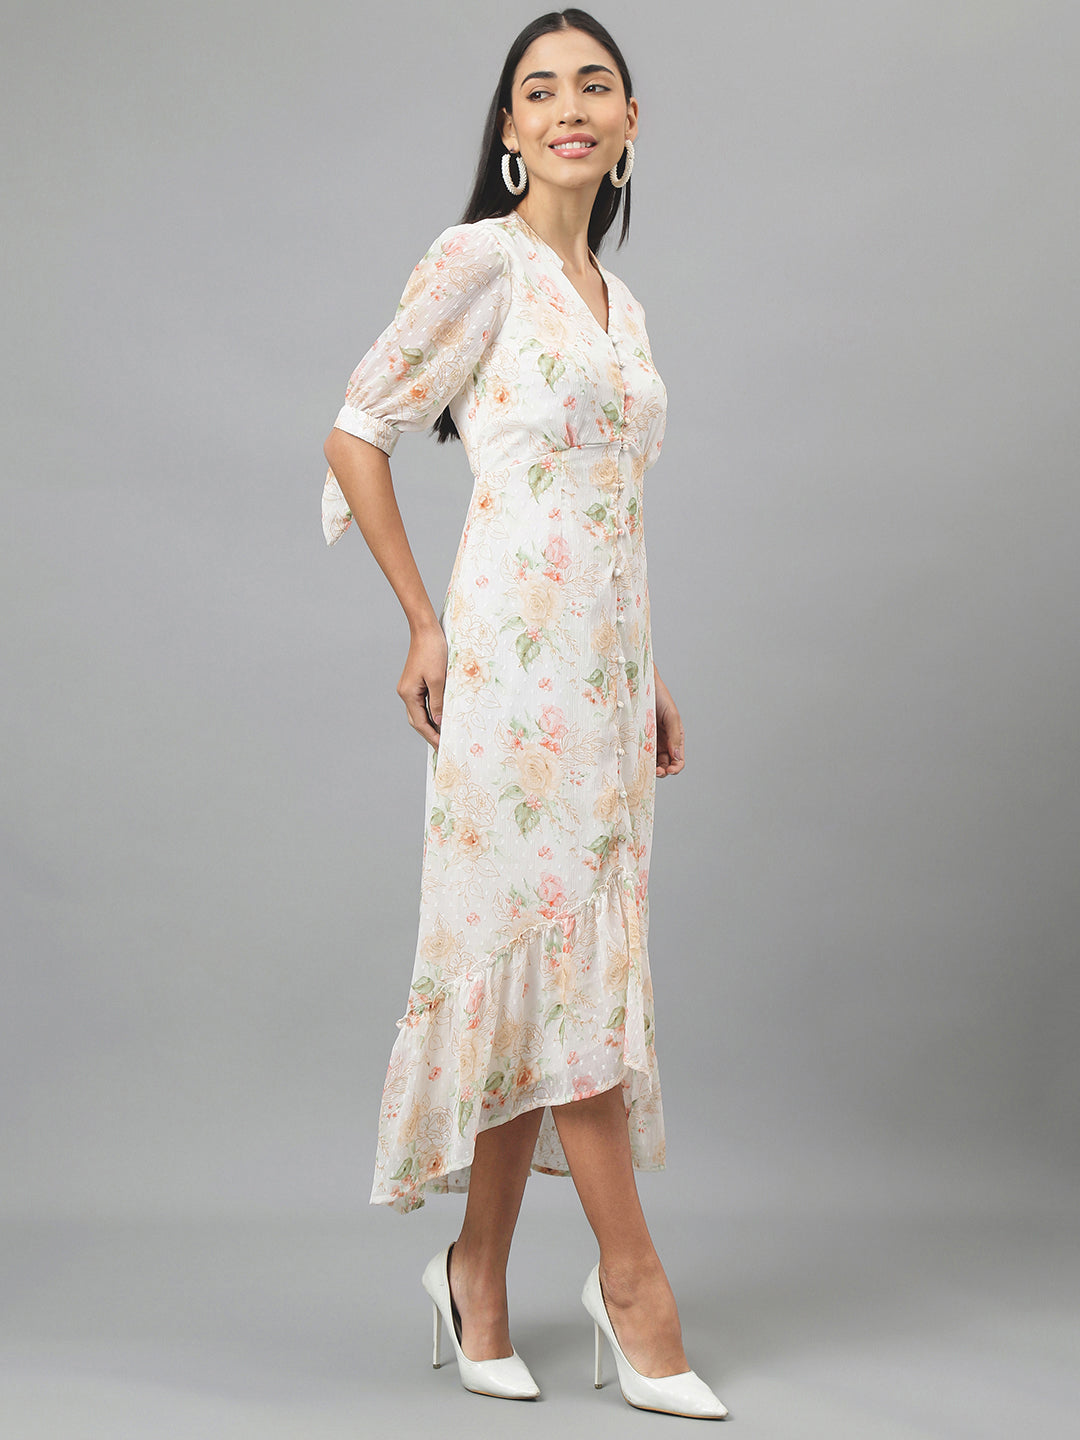 Ivory Half Sleeve V-Neck Floral Print High Low Dress